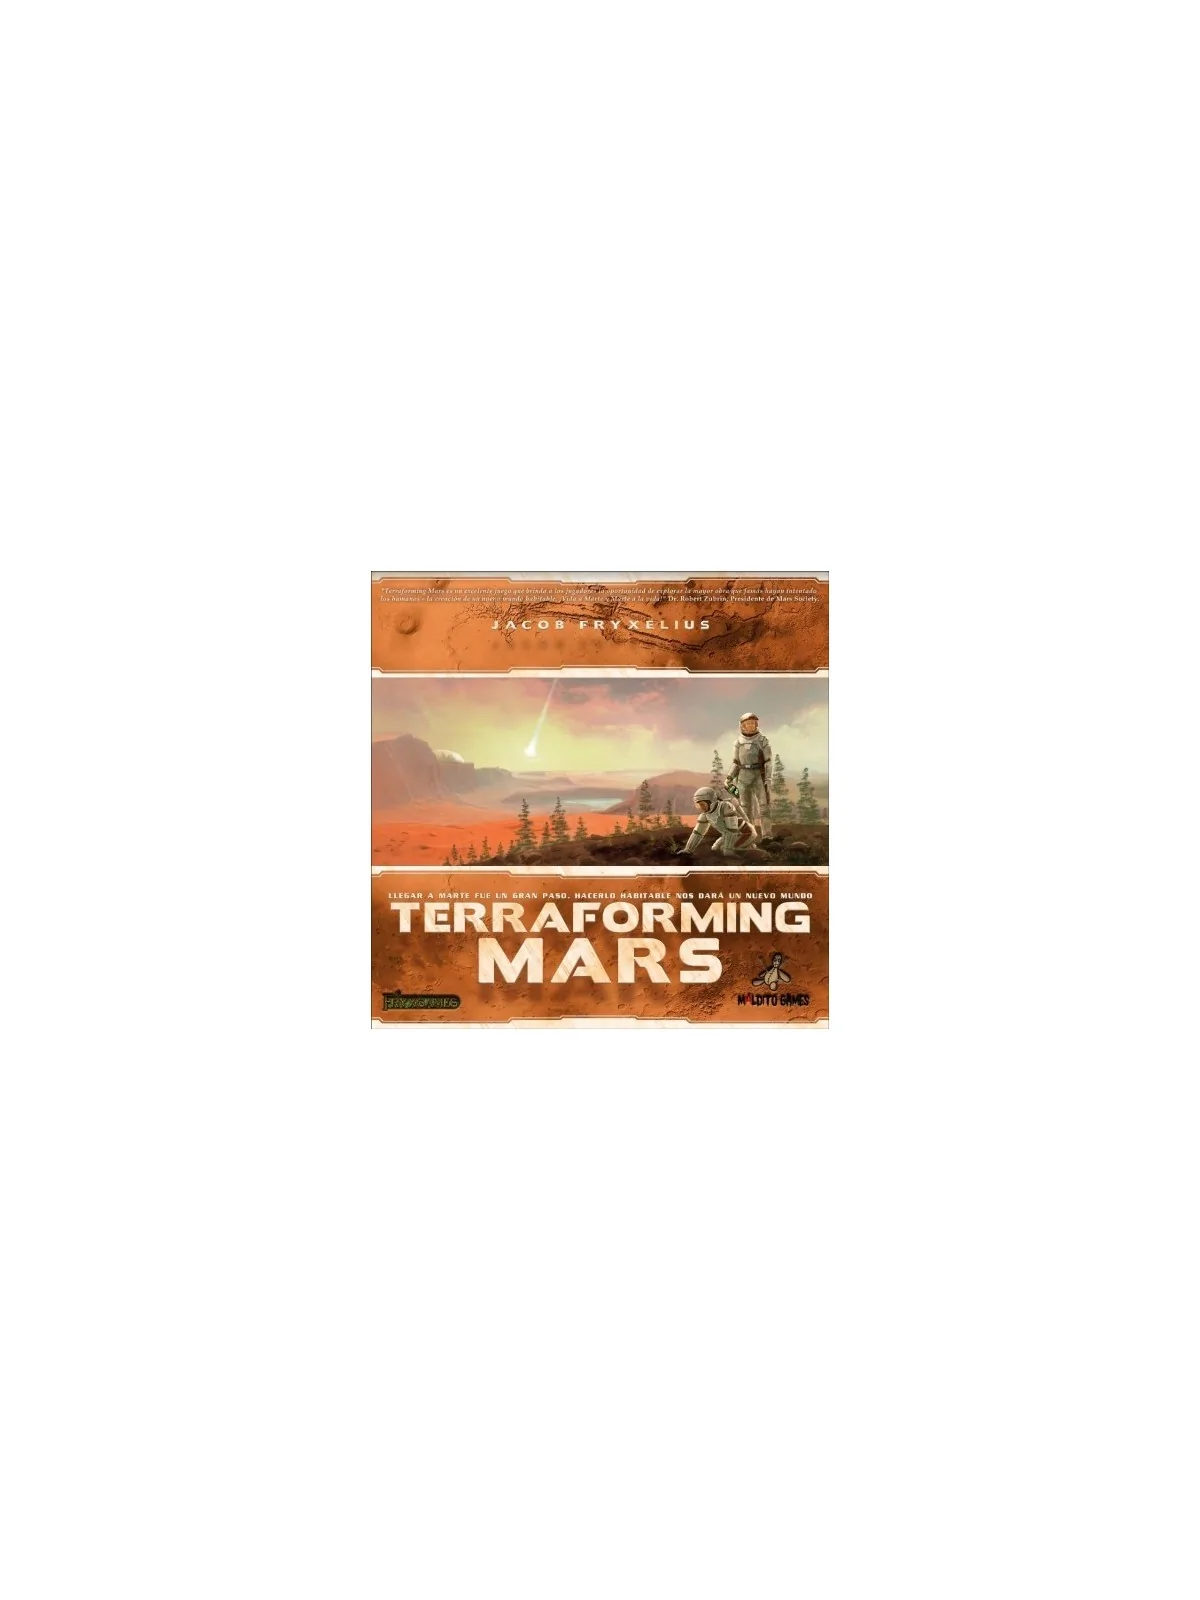 Comprar Terraforming Mars barato al mejor precio 49,50 € de 